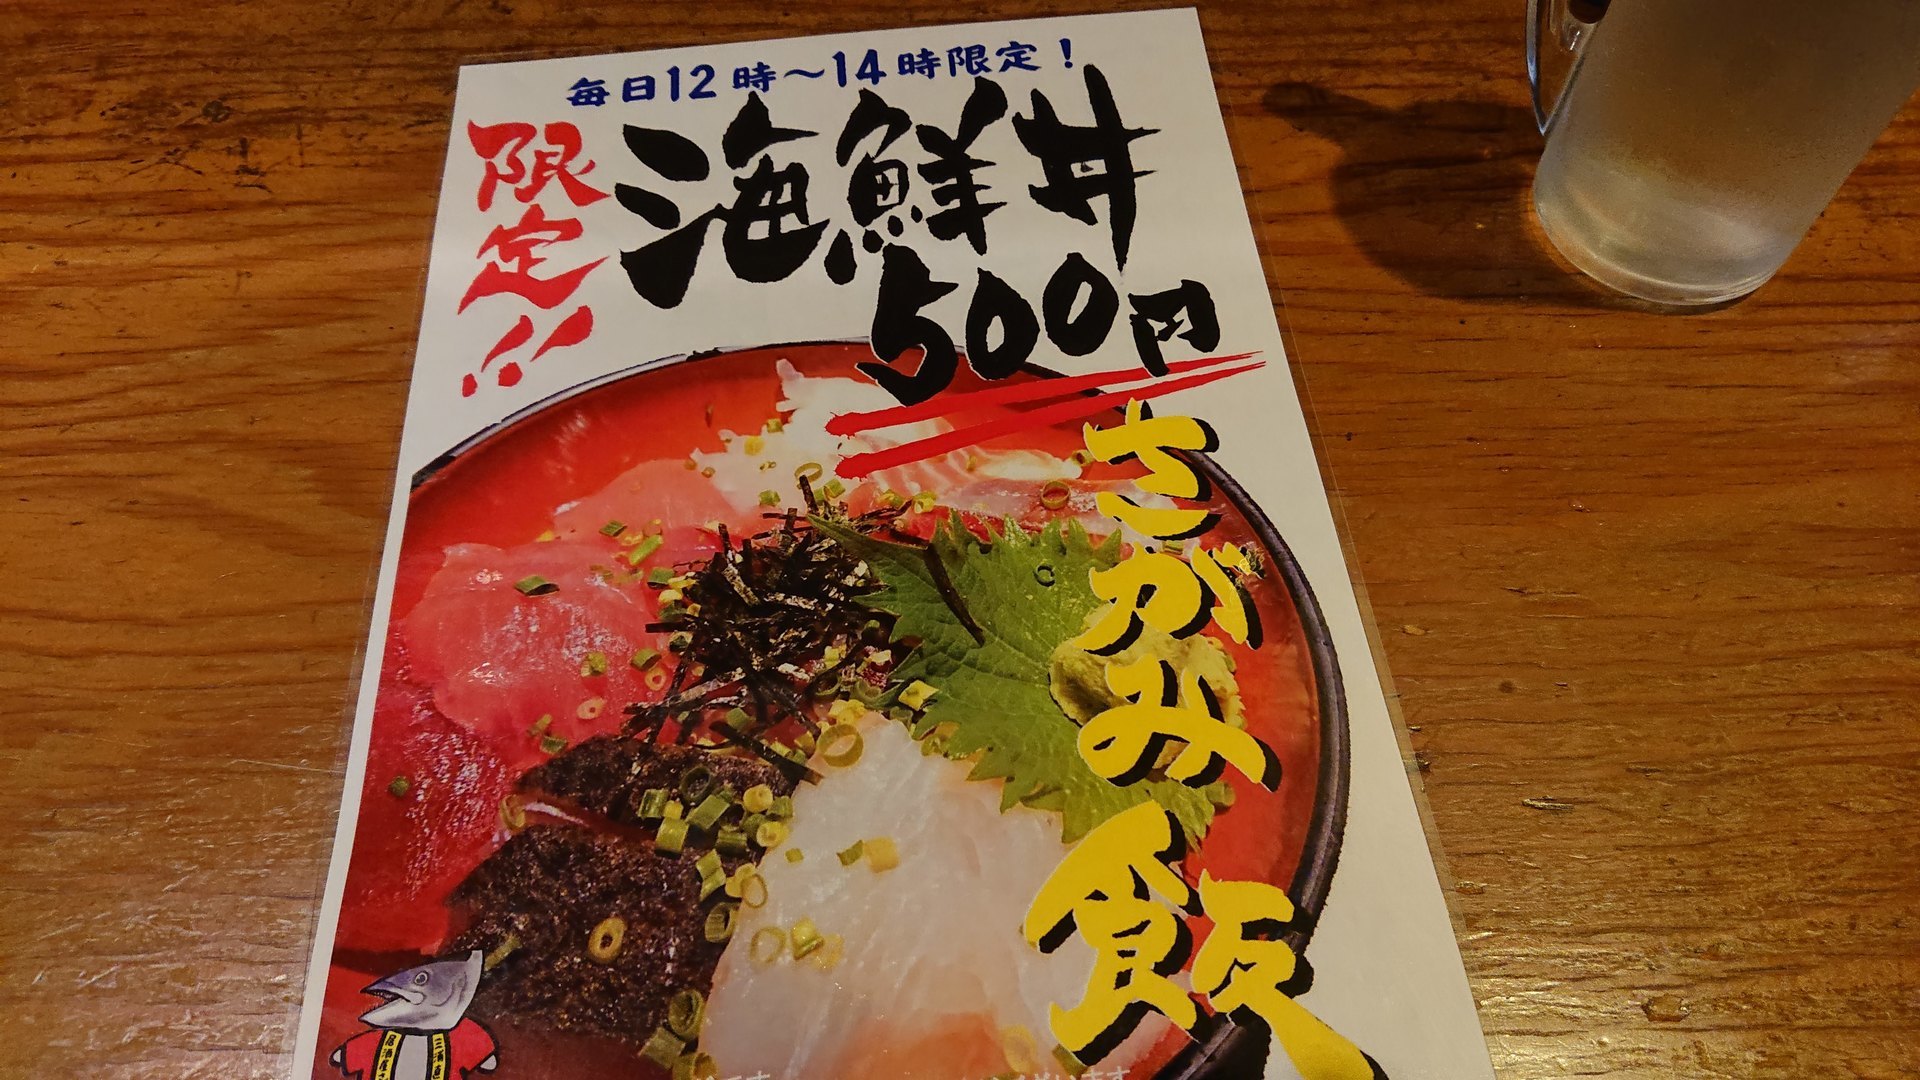 さがみで海鮮丼500円にびっくりした 横浜駅周辺 時々あちらこちら 孤独のワンコインランチ日記